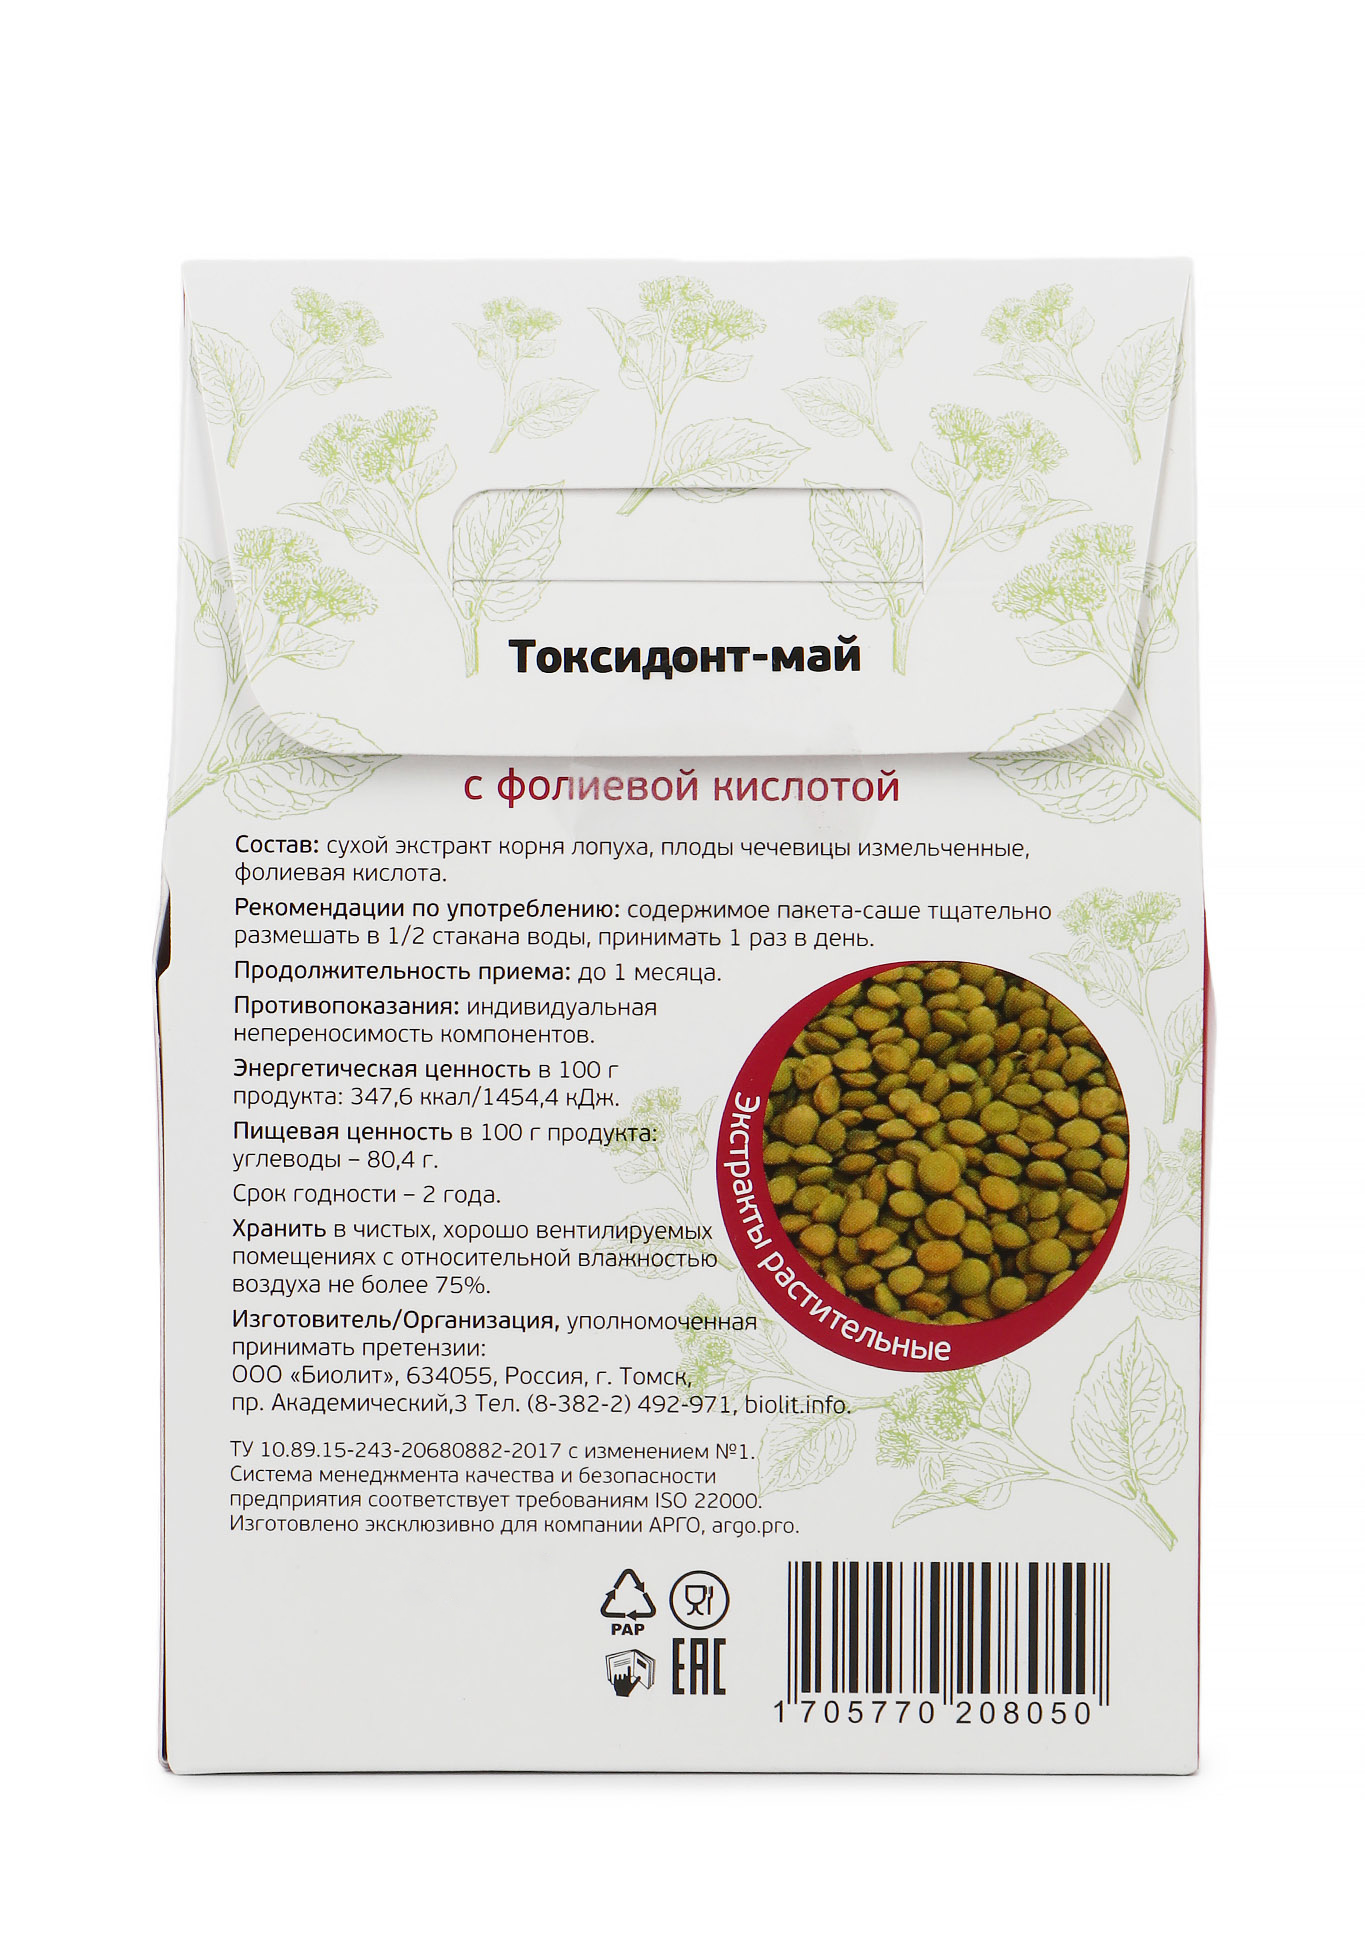 Экстракт растительный "Токсидонт-май" для сердца Природная аптека Сибири - фото 2